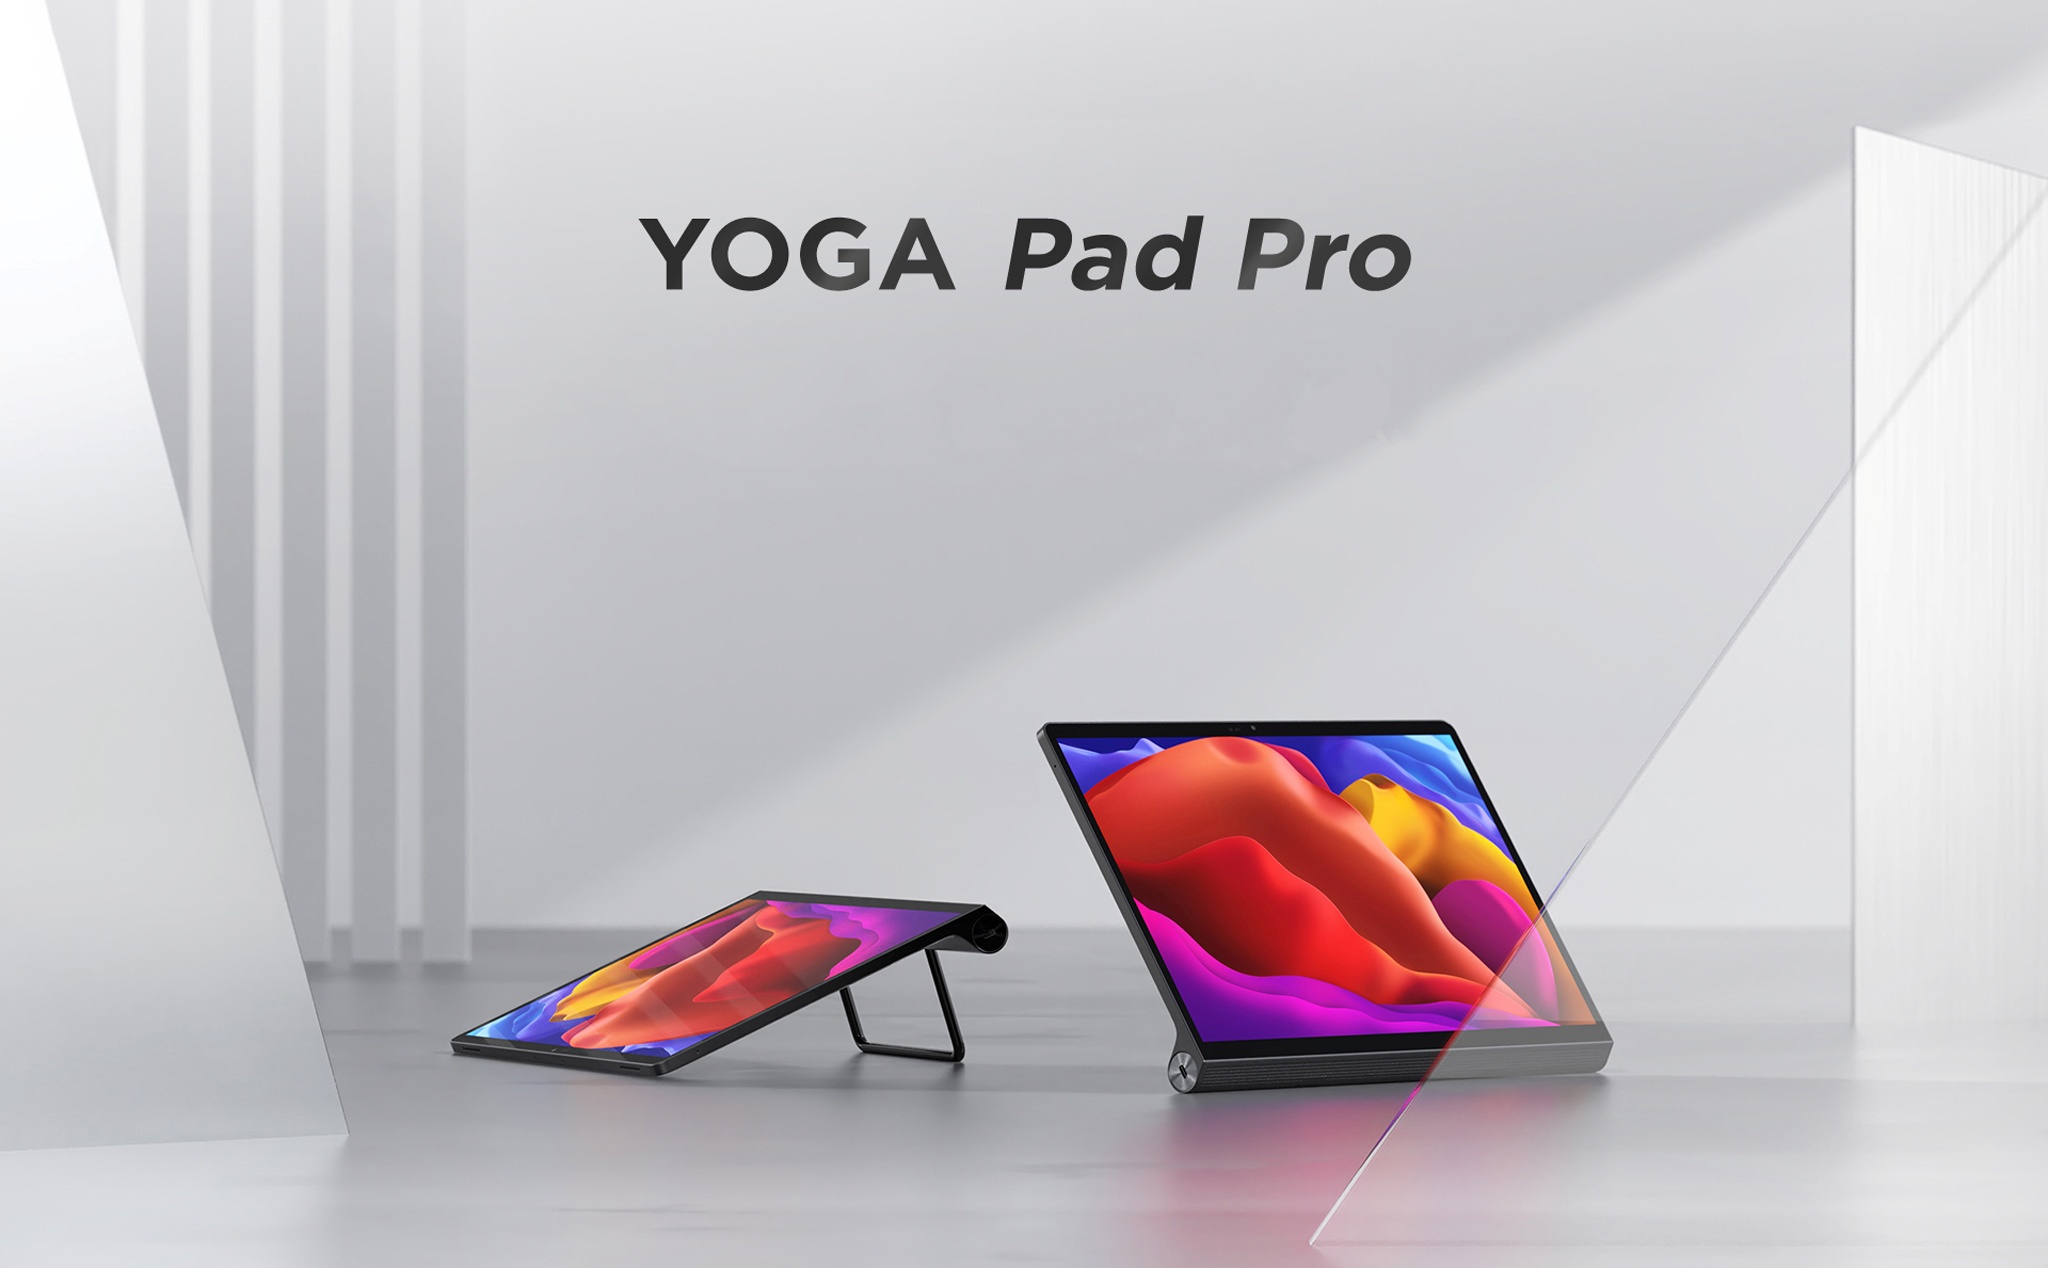 YOGA Pad Pro: Tablet cao cấp mới của Lenovo, có thể hoạt động như một màn chiếu game Switch